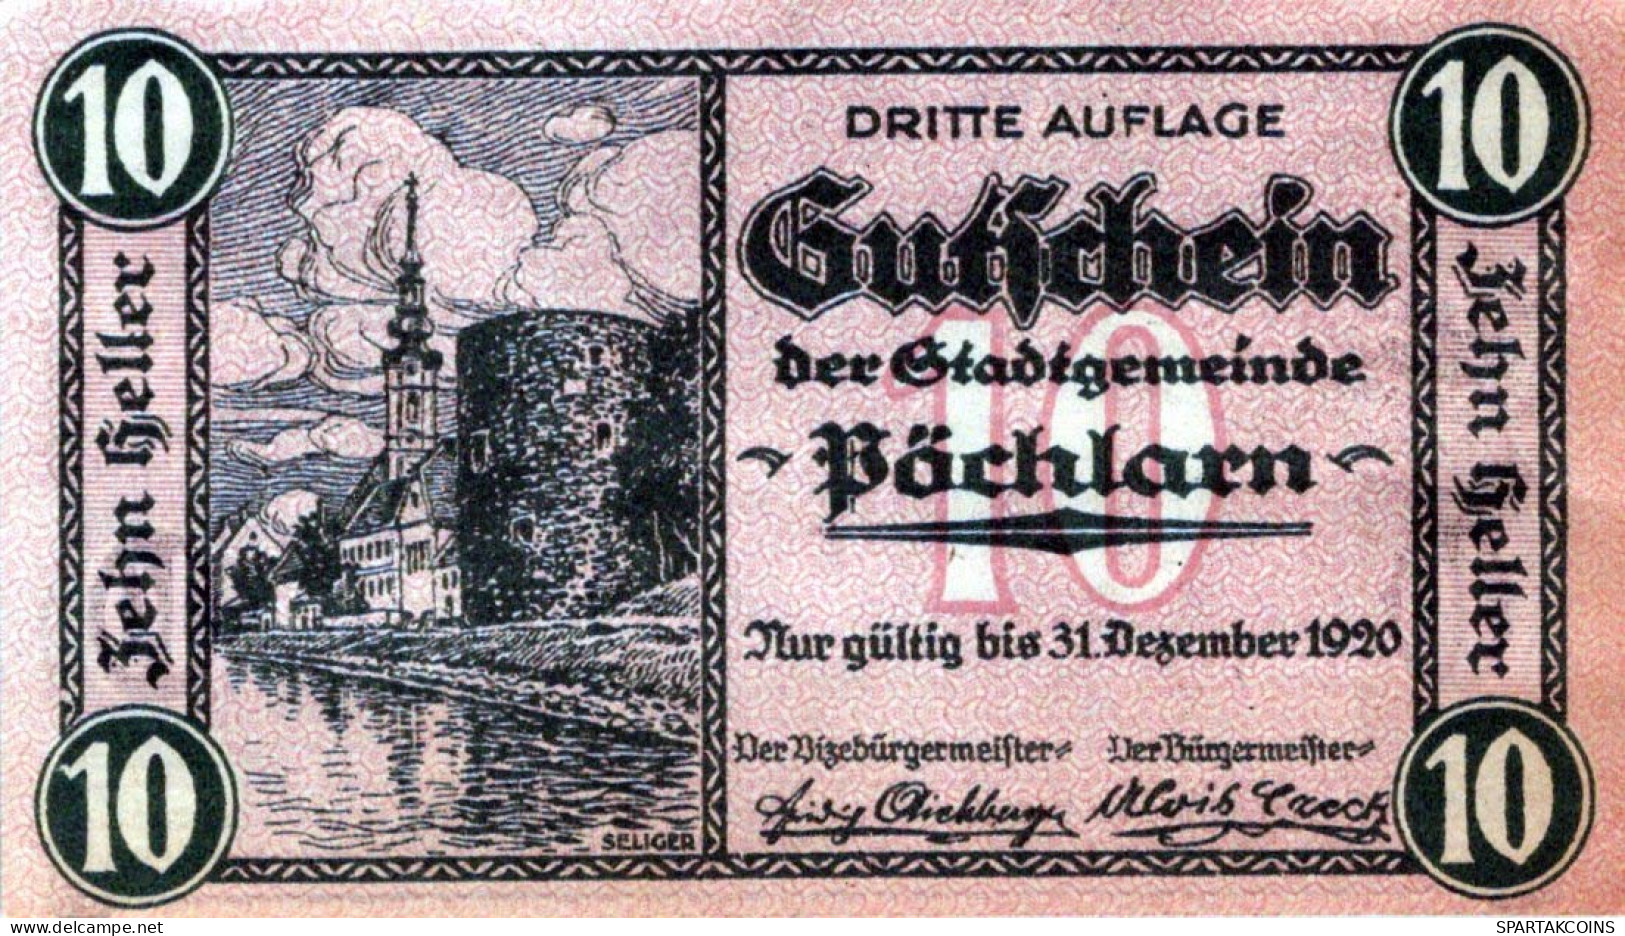 10 HELLER 1920 Stadt PoCHLARN Niedrigeren Österreich Notgeld Banknote #PE360 - [11] Lokale Uitgaven